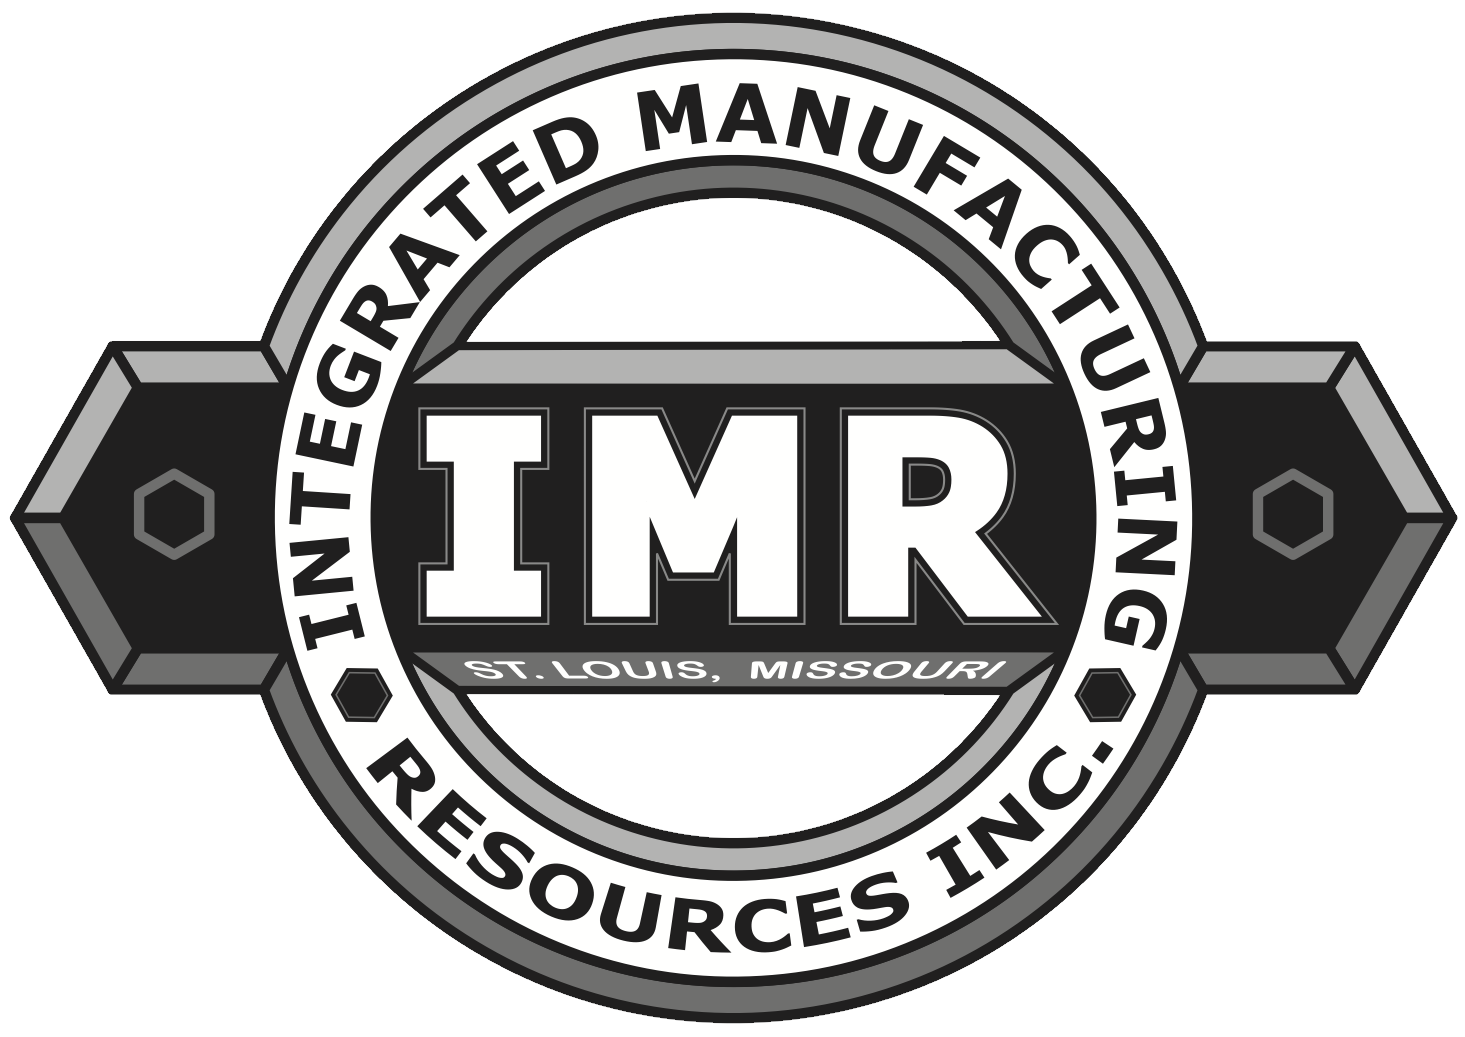 IMR logo